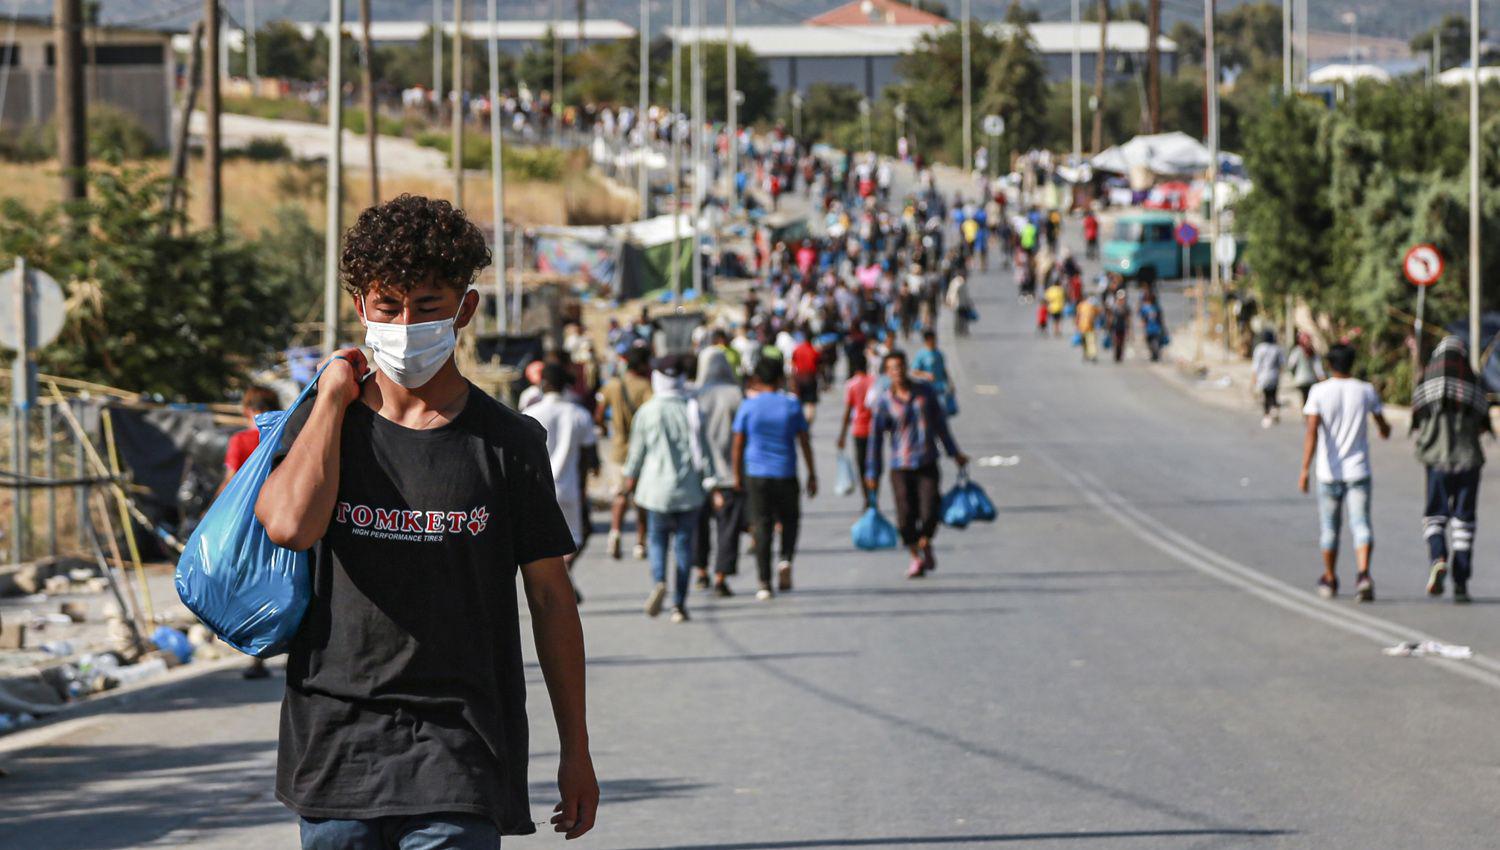 Grecia reubicoacute a migrantes con 174 casos de coronavirus